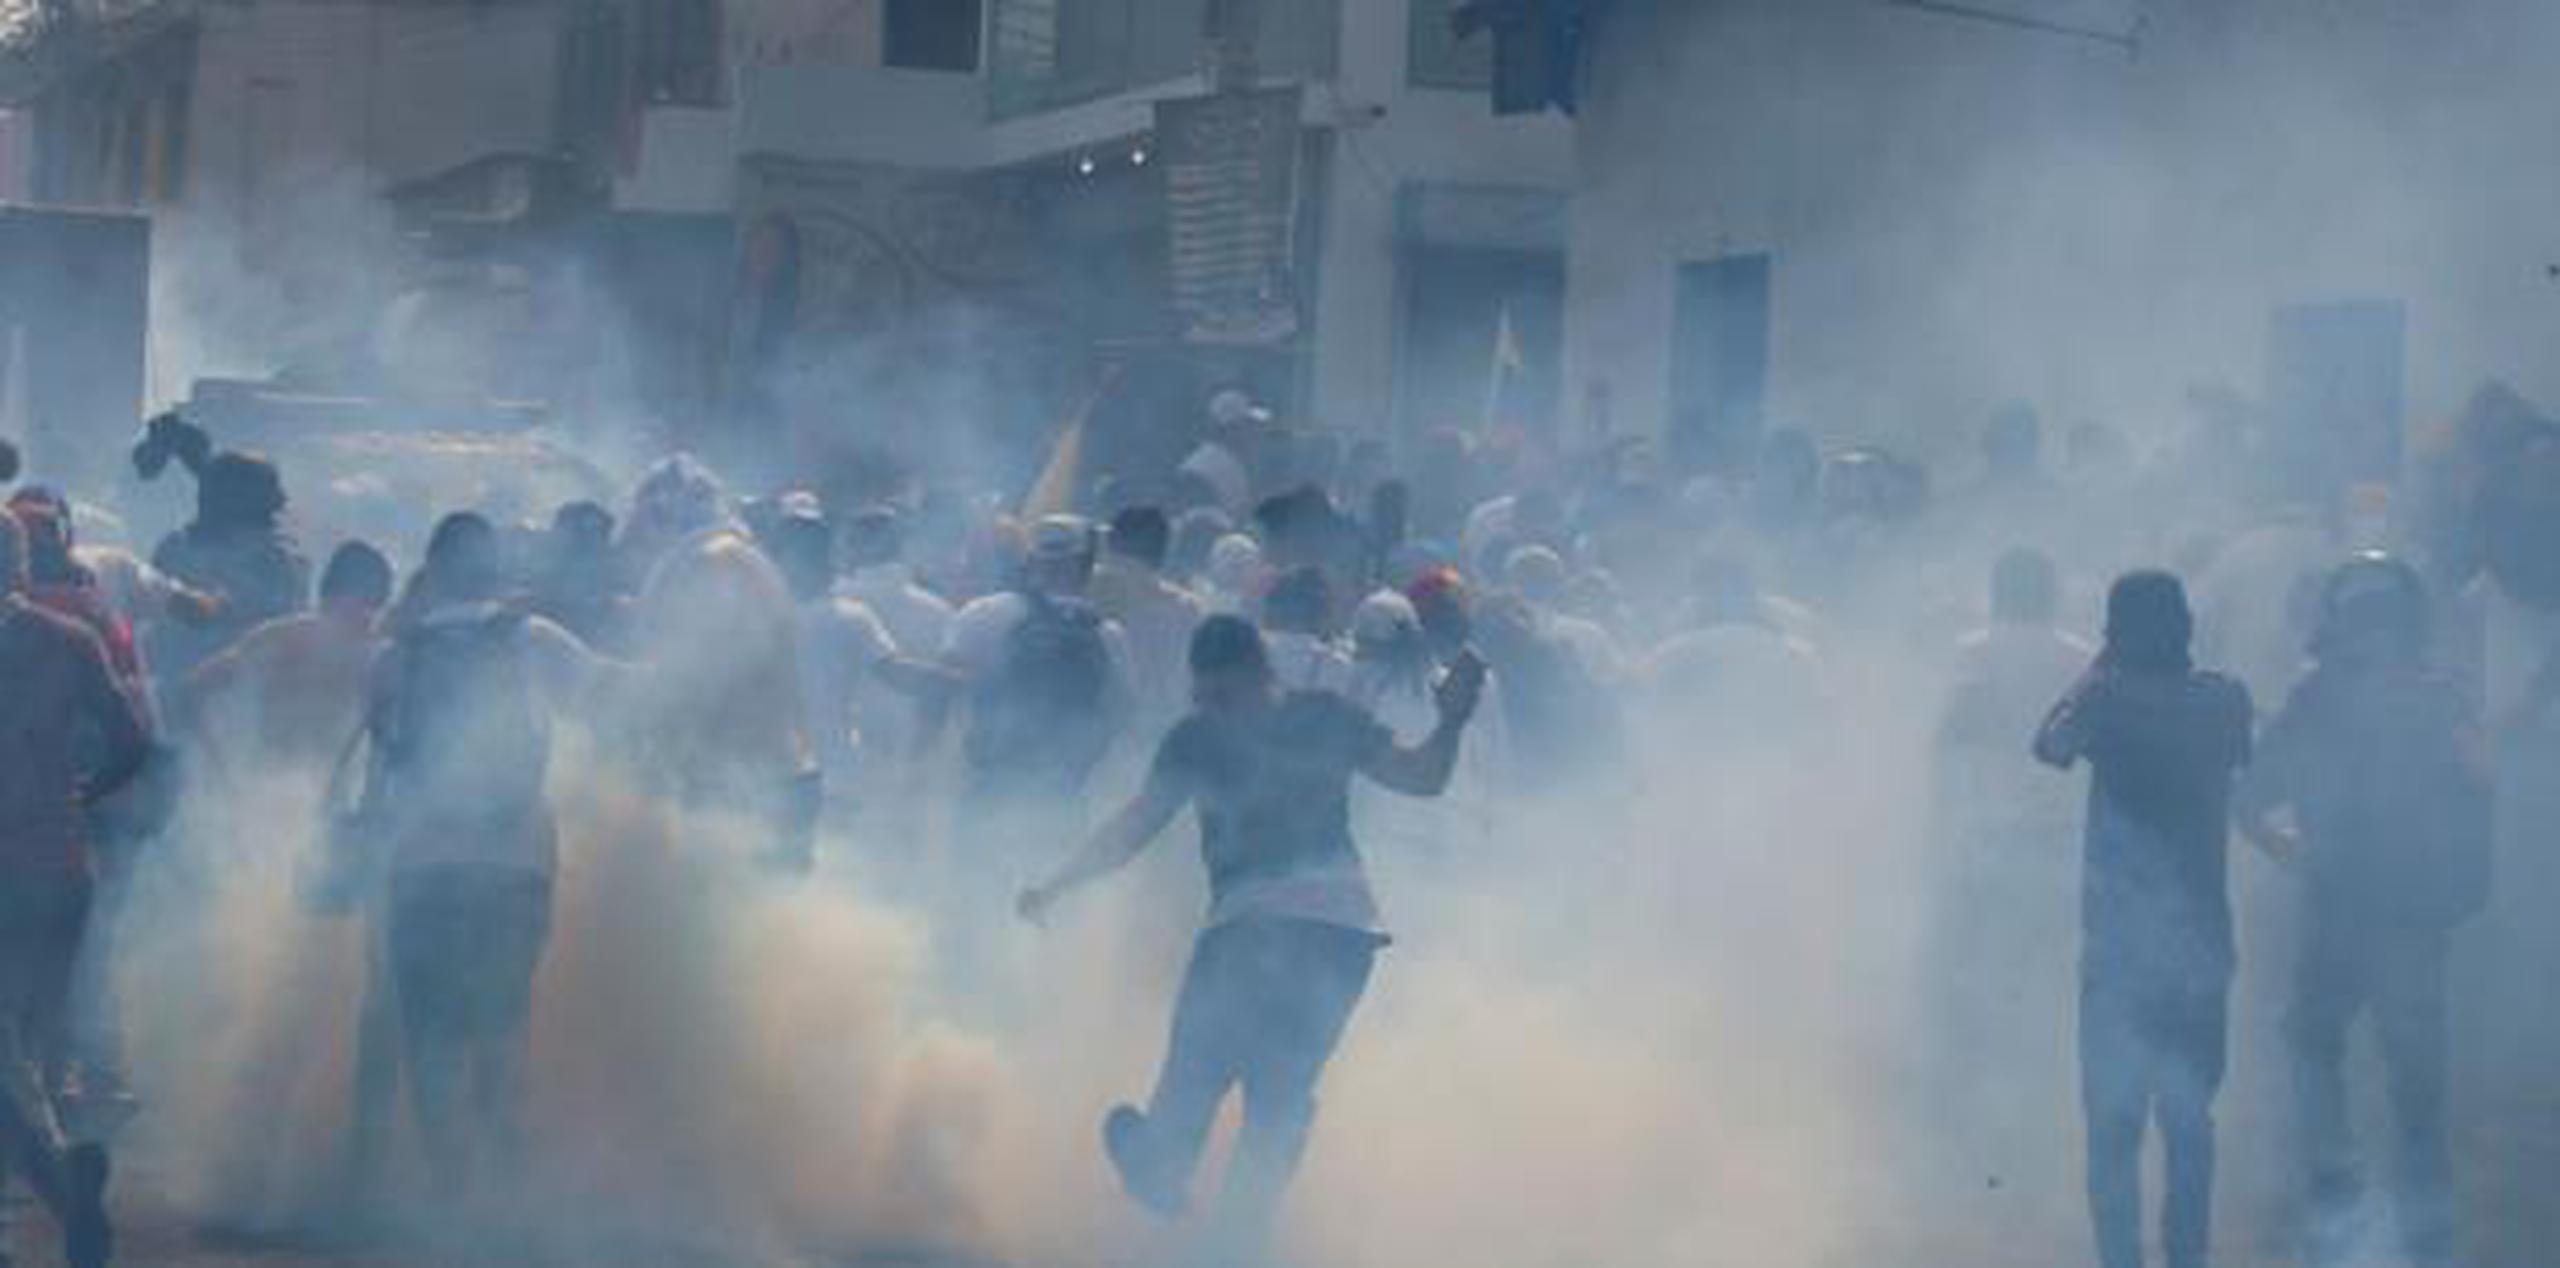 El pasado 23 de febrero se llevaron a cabo protestas en Venezuela que terminaron con varias muertes. (AP)